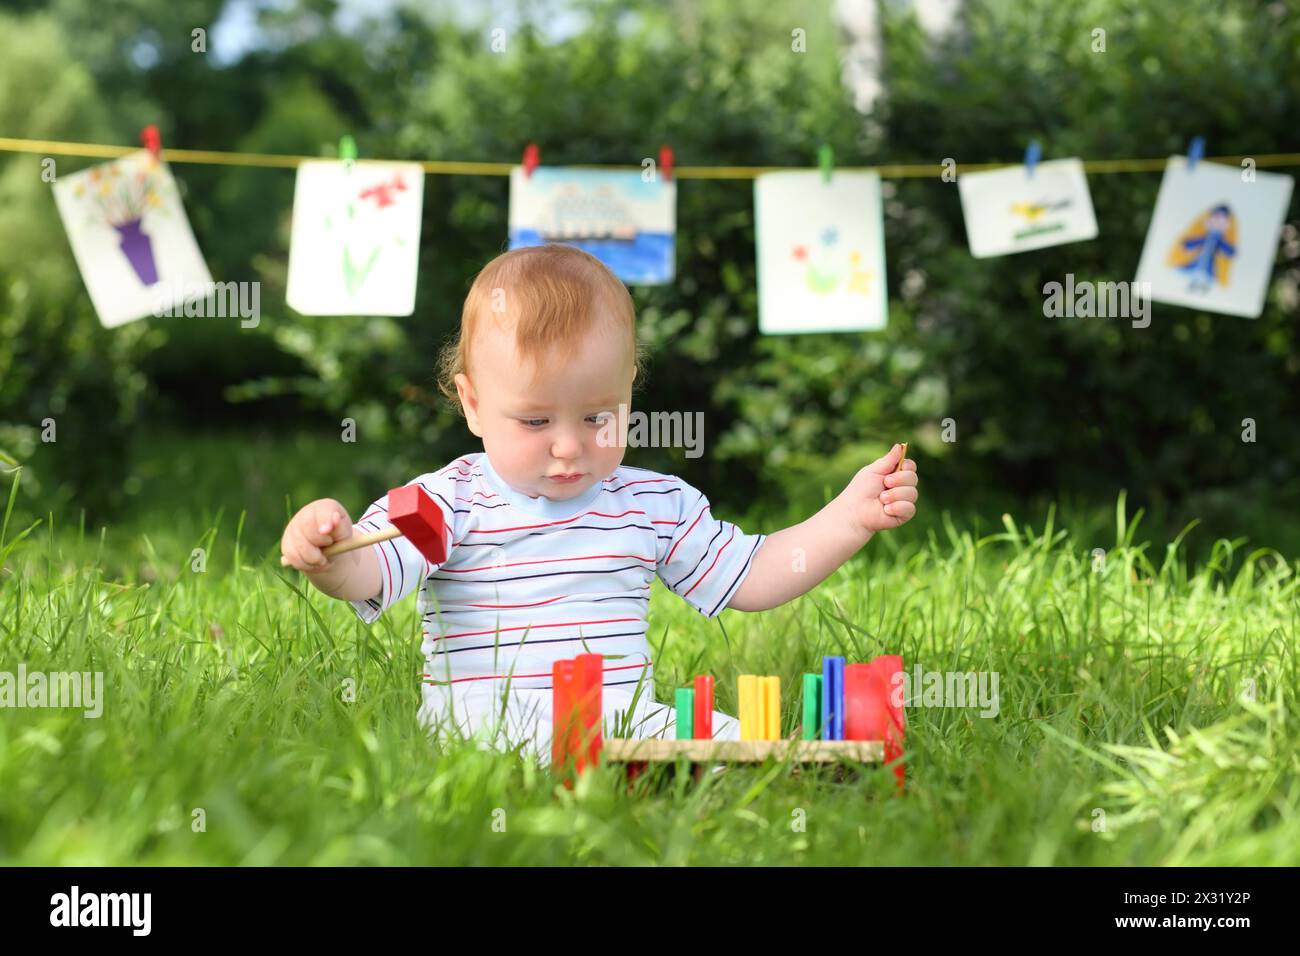 Ein kleiner Junge spielt mit bunten Holzspielzeugen auf dem Gras, im Hintergrund hängen Kinderzeichnungen Stockfoto